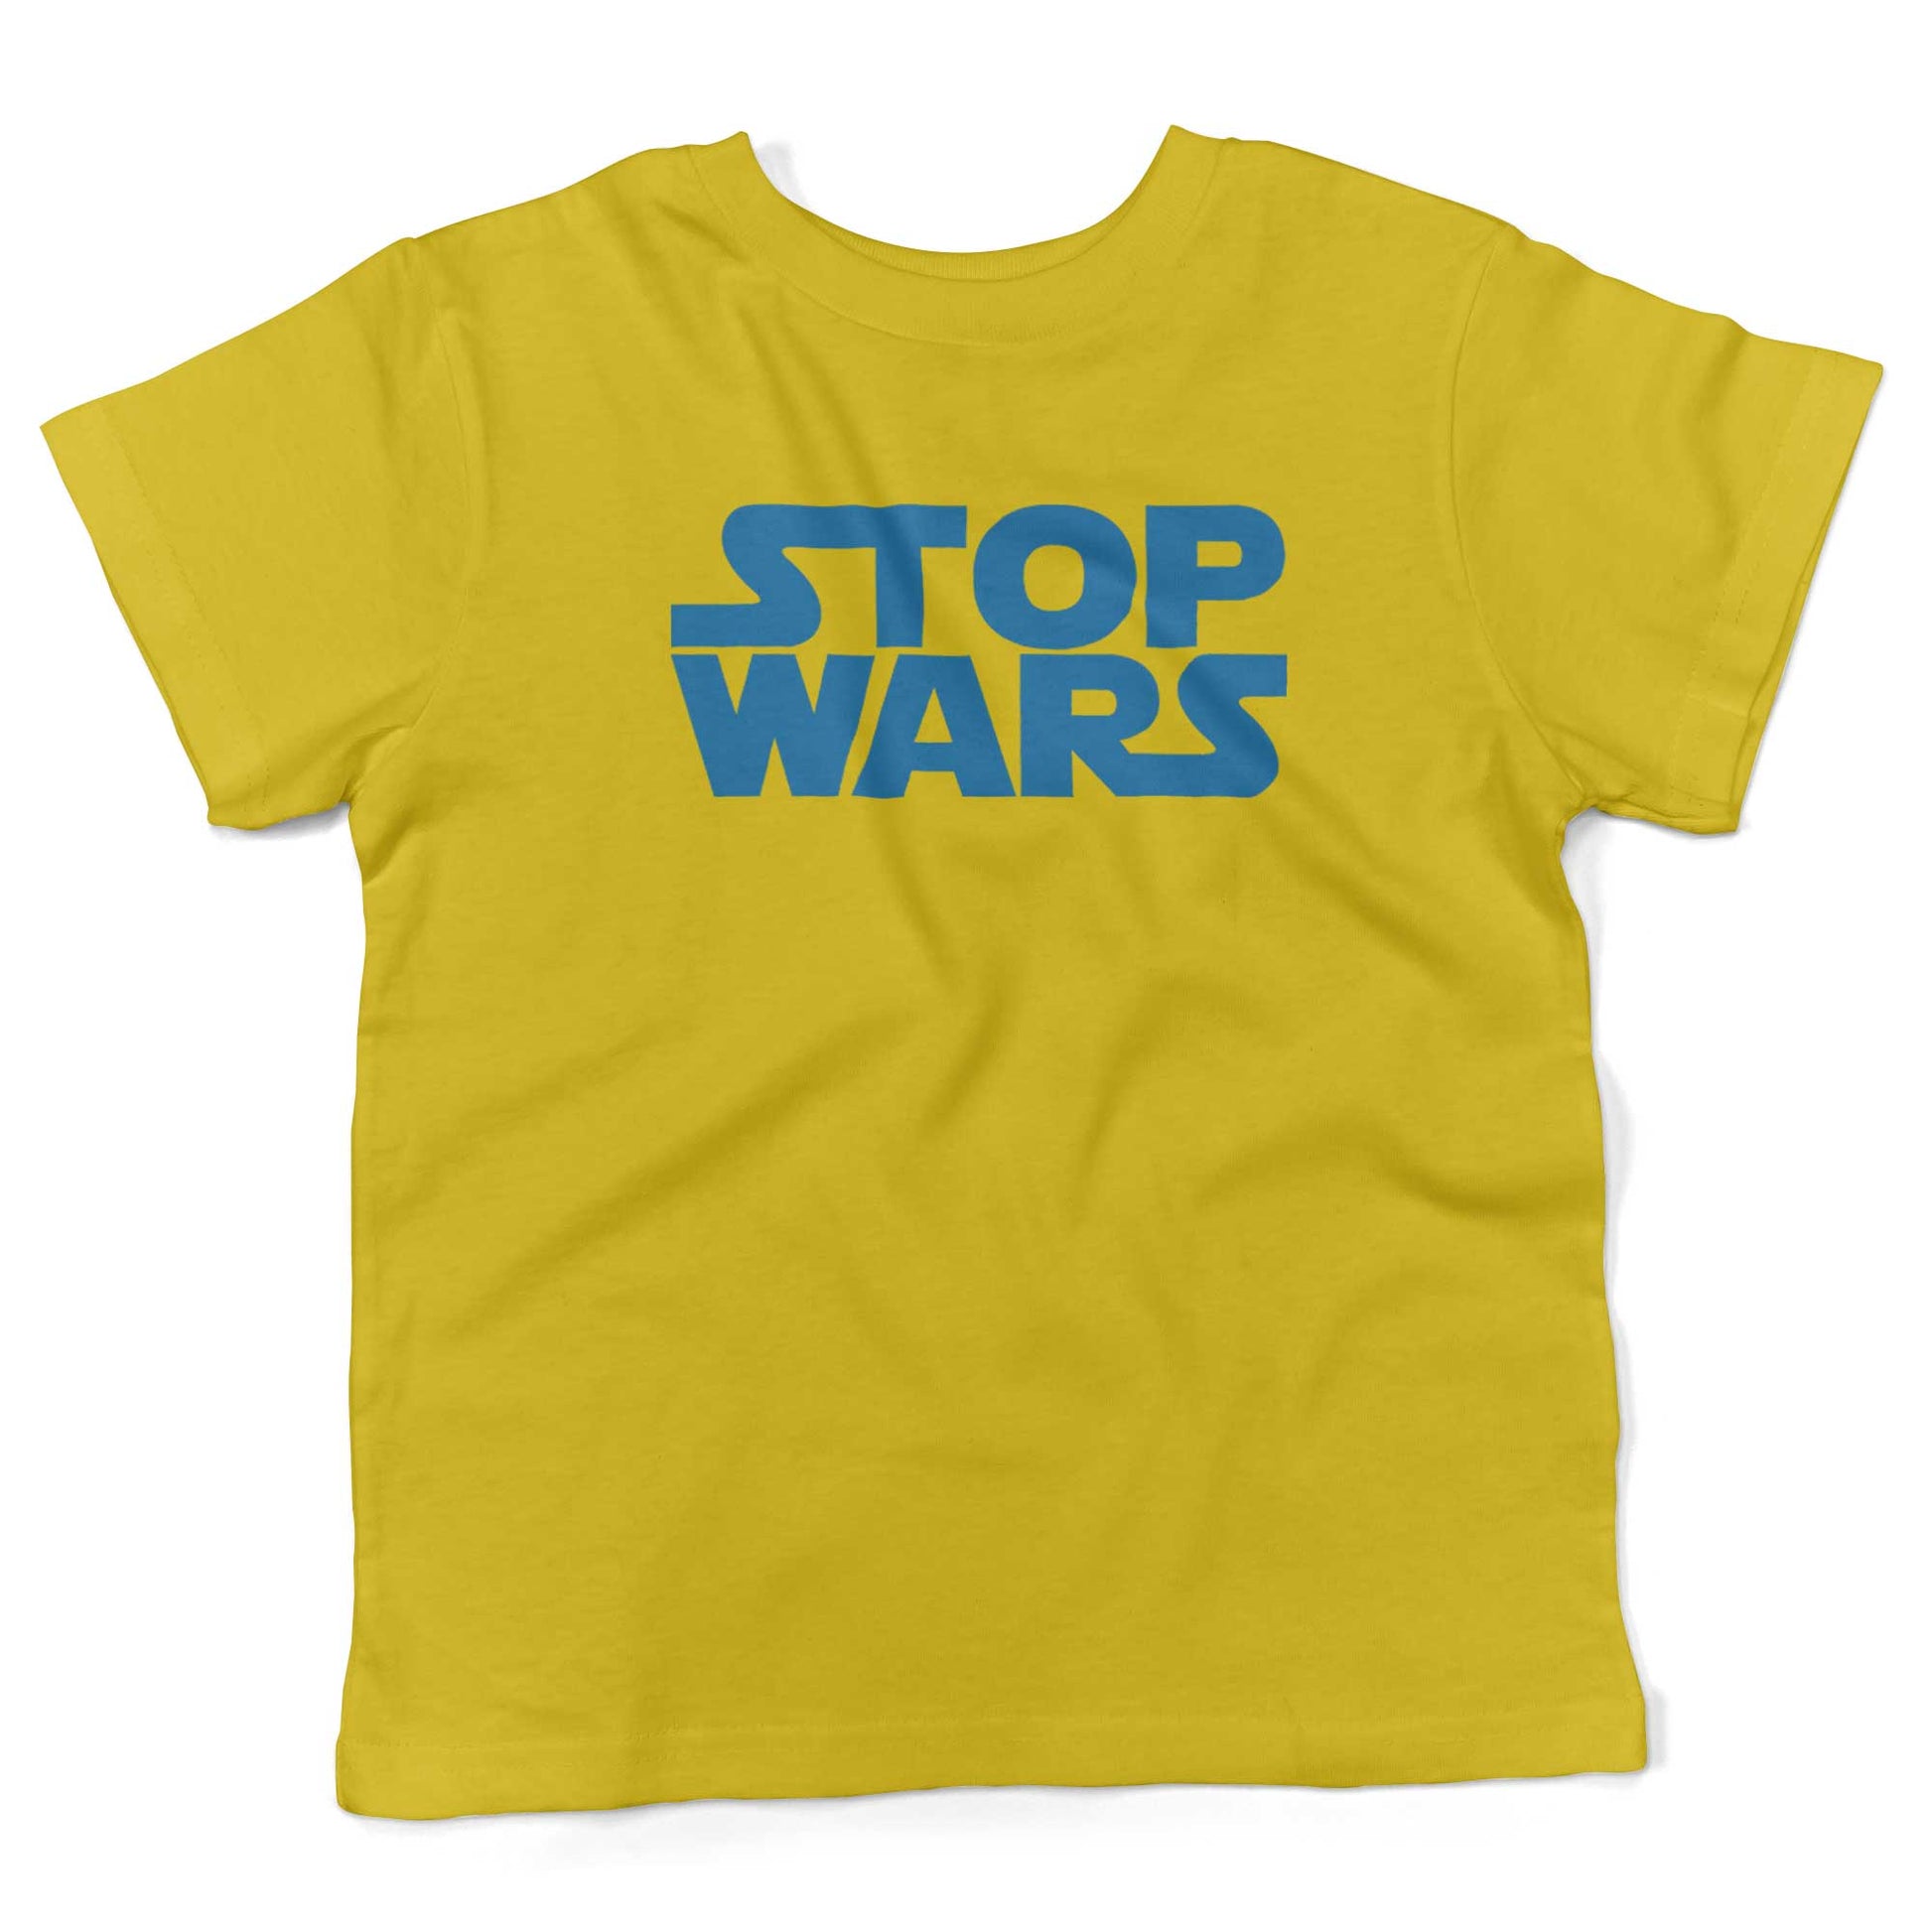 STOP WARS Toddler Shirt-Sunshine Yellow-2T